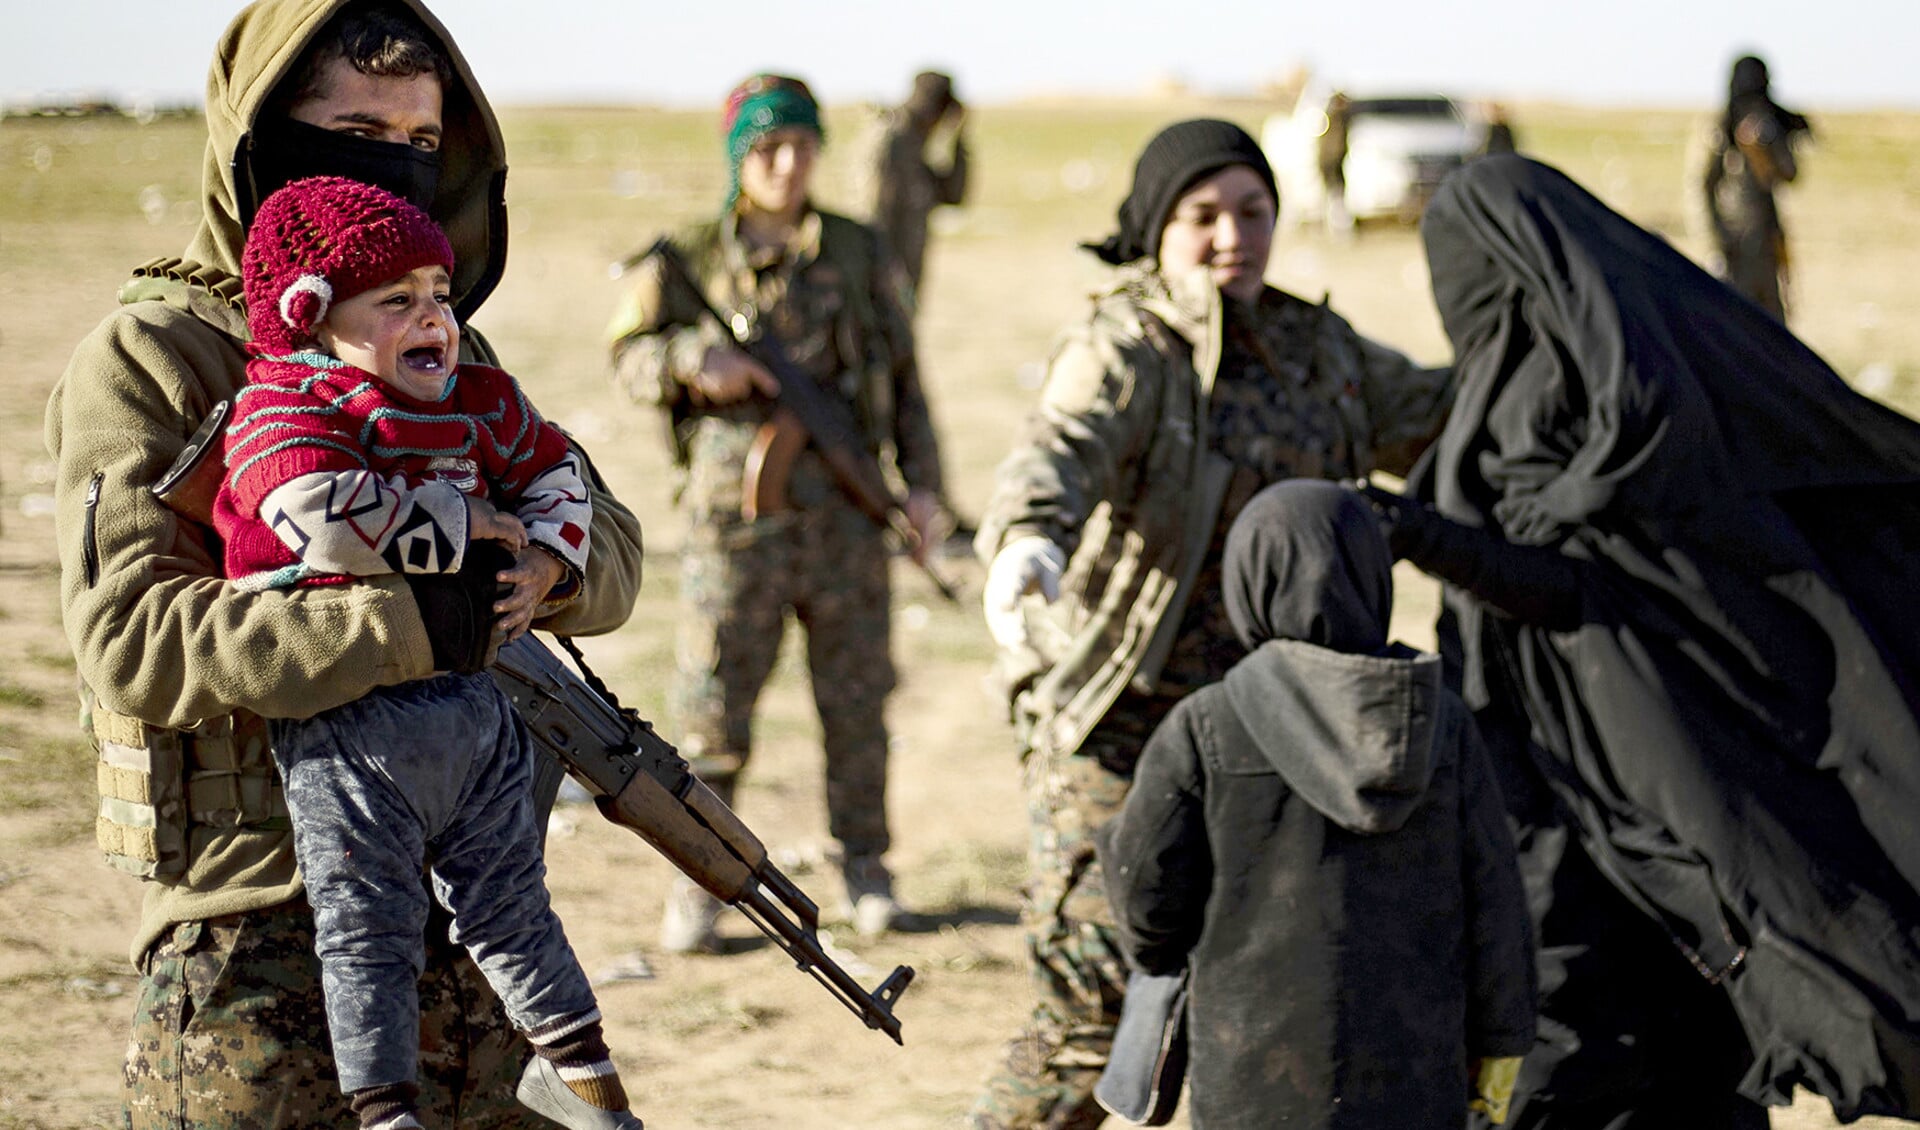 Vrouwen en kinderen afkomstig uit het ‘kalifaat’ van ISIS worden gefouilleerd door Koerdische strijdkrachten. De gesluierde vrouw rechts op de foto is niet Judith.